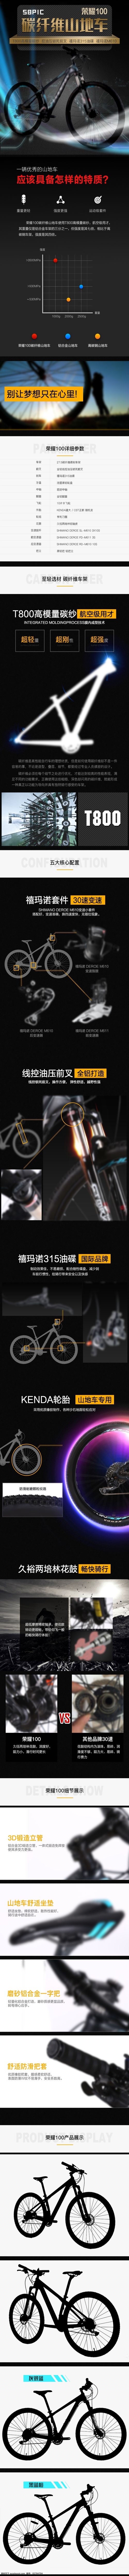 黑 黄色 碳纤维 山地 自行车 详情 页 模板 竞赛自行车 碳纤维车架 碳纤维山地车 碳纤维自行车 运动